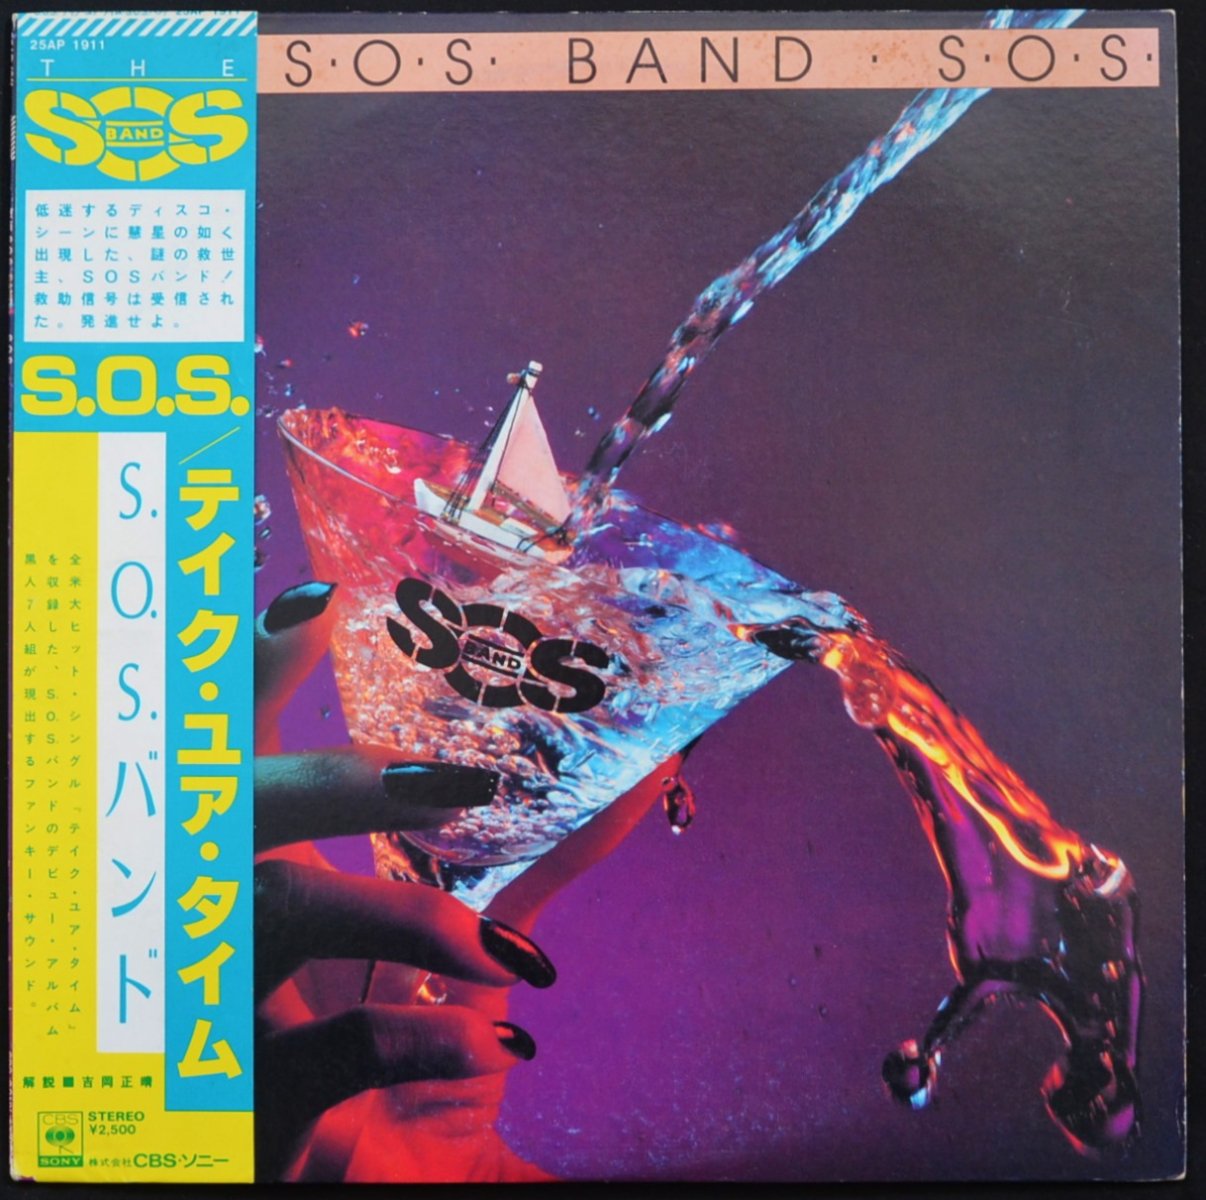 S.O.S.バンド THE S.O.S. BAND / テイク・ユア・タイム S.O.S. (LP)